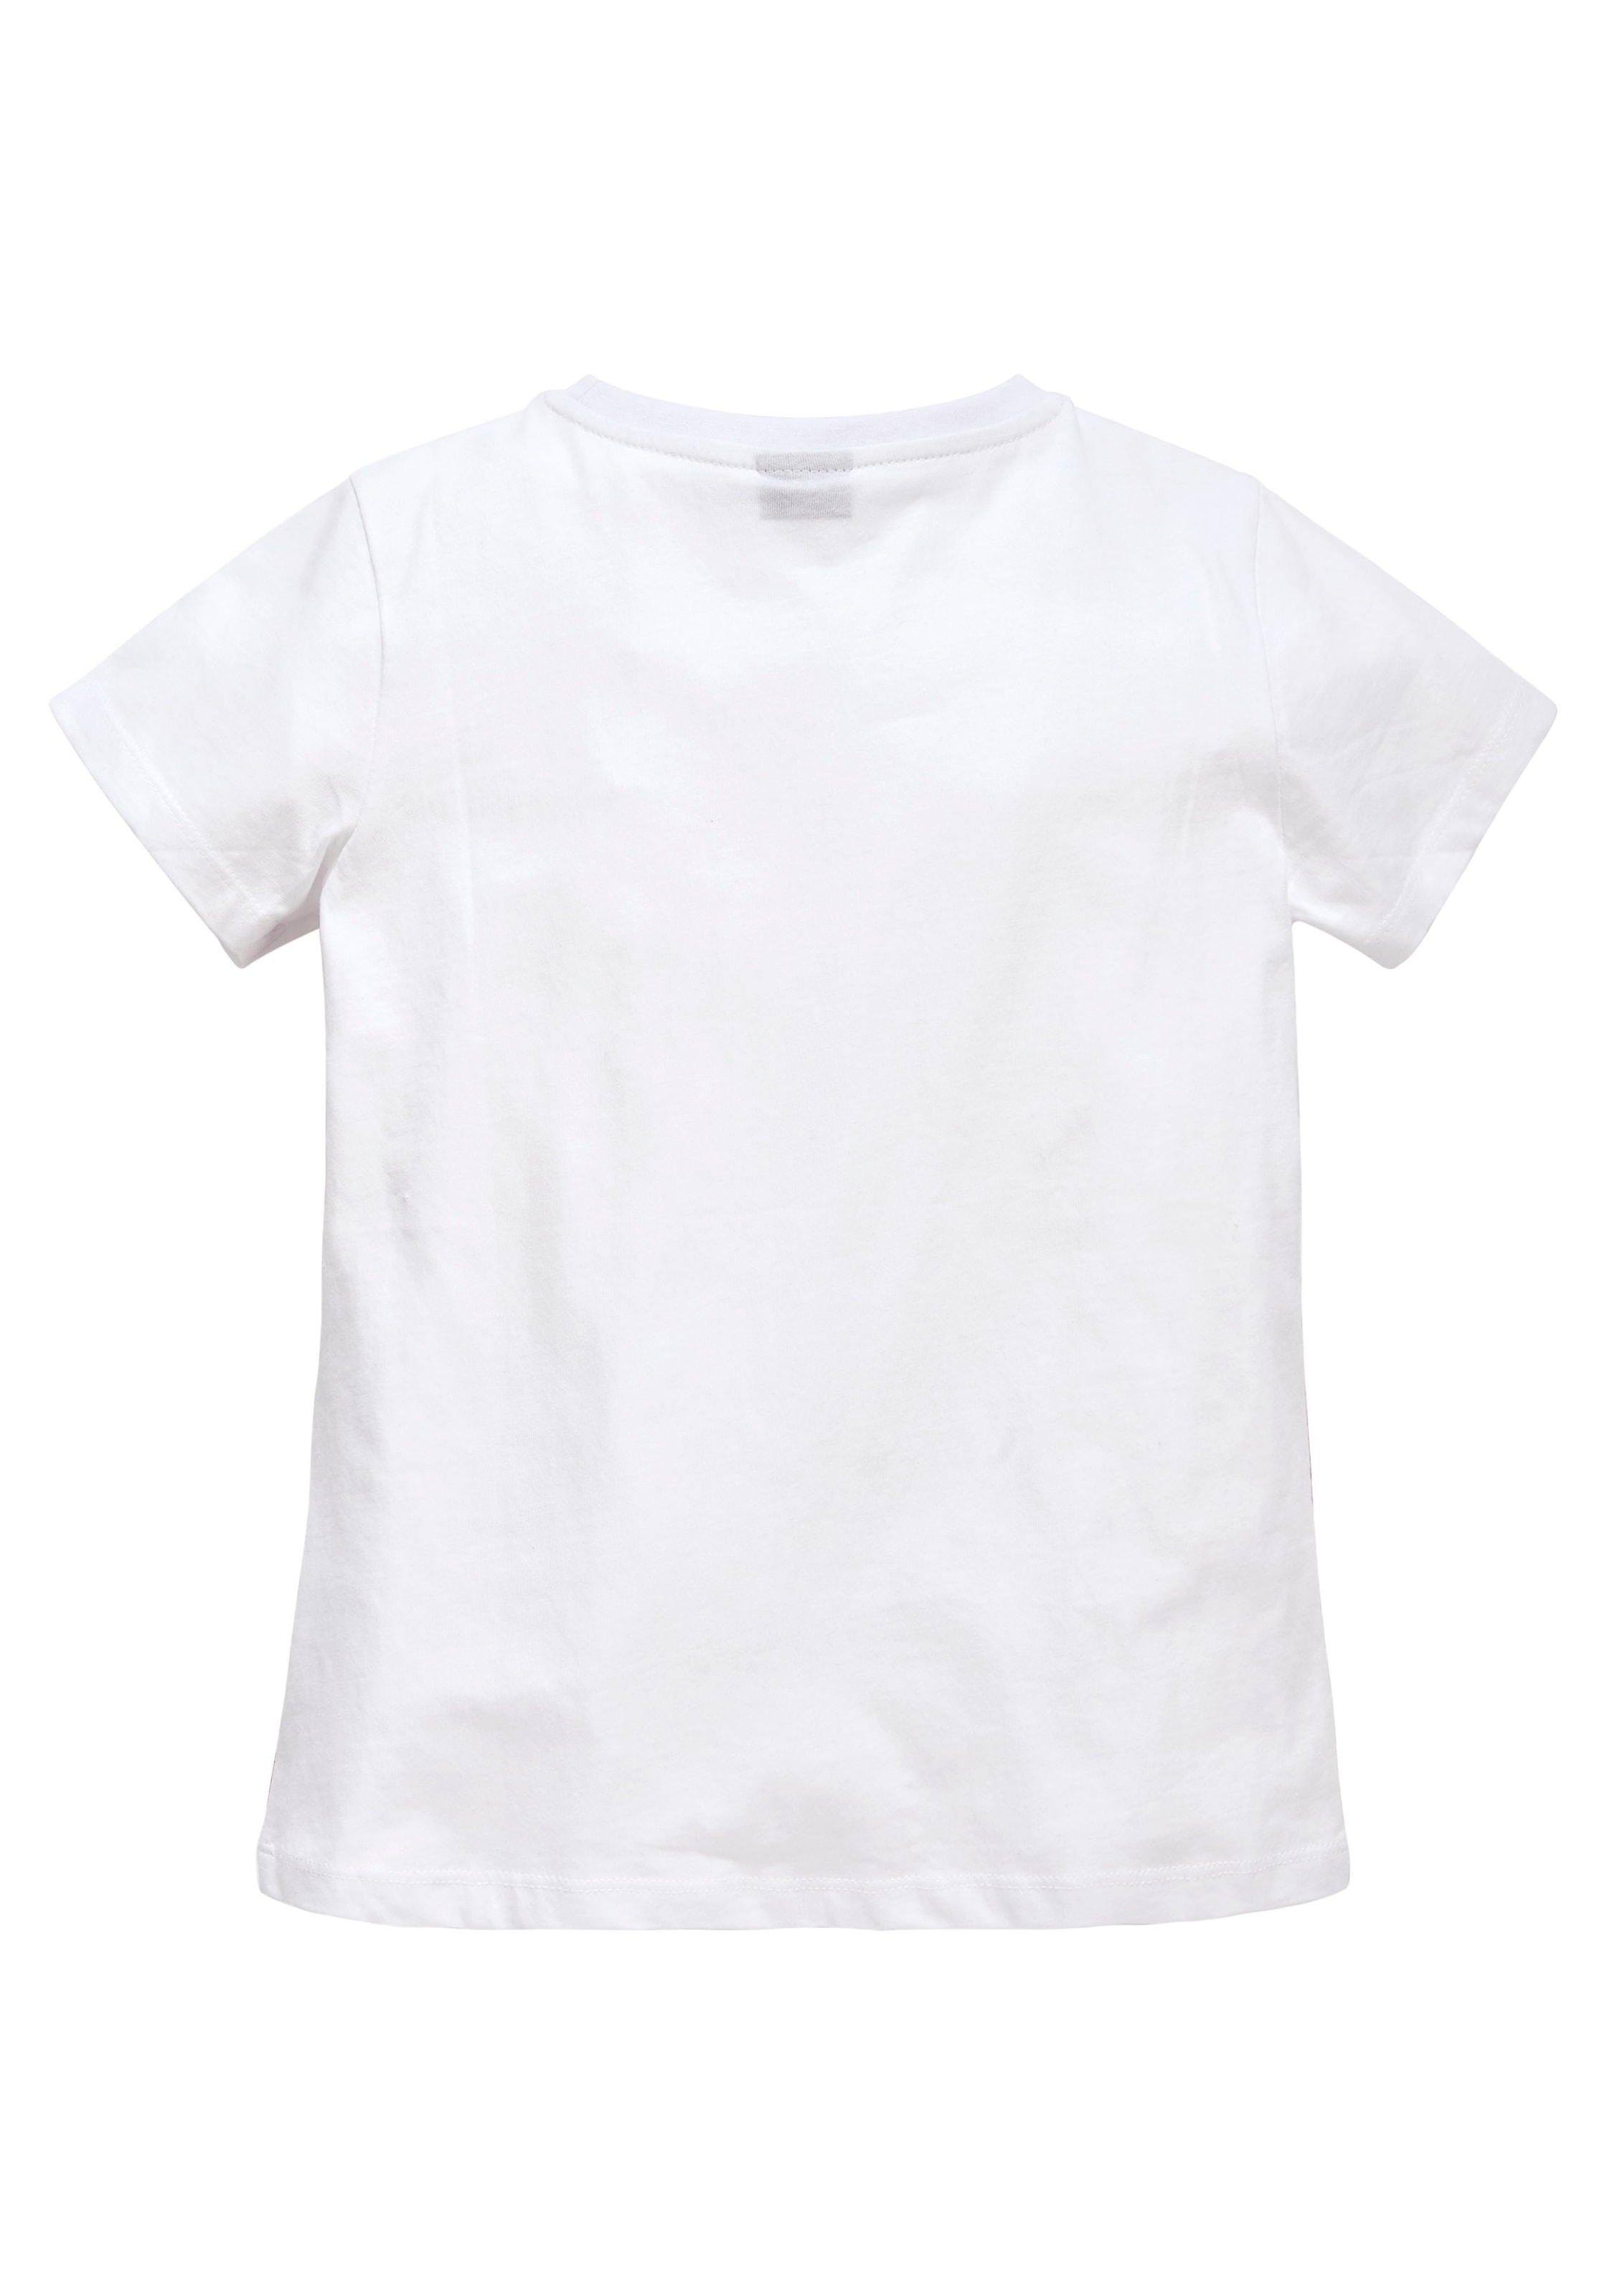 KIDSWORLD T-Shirt, in leicht taillierter Form